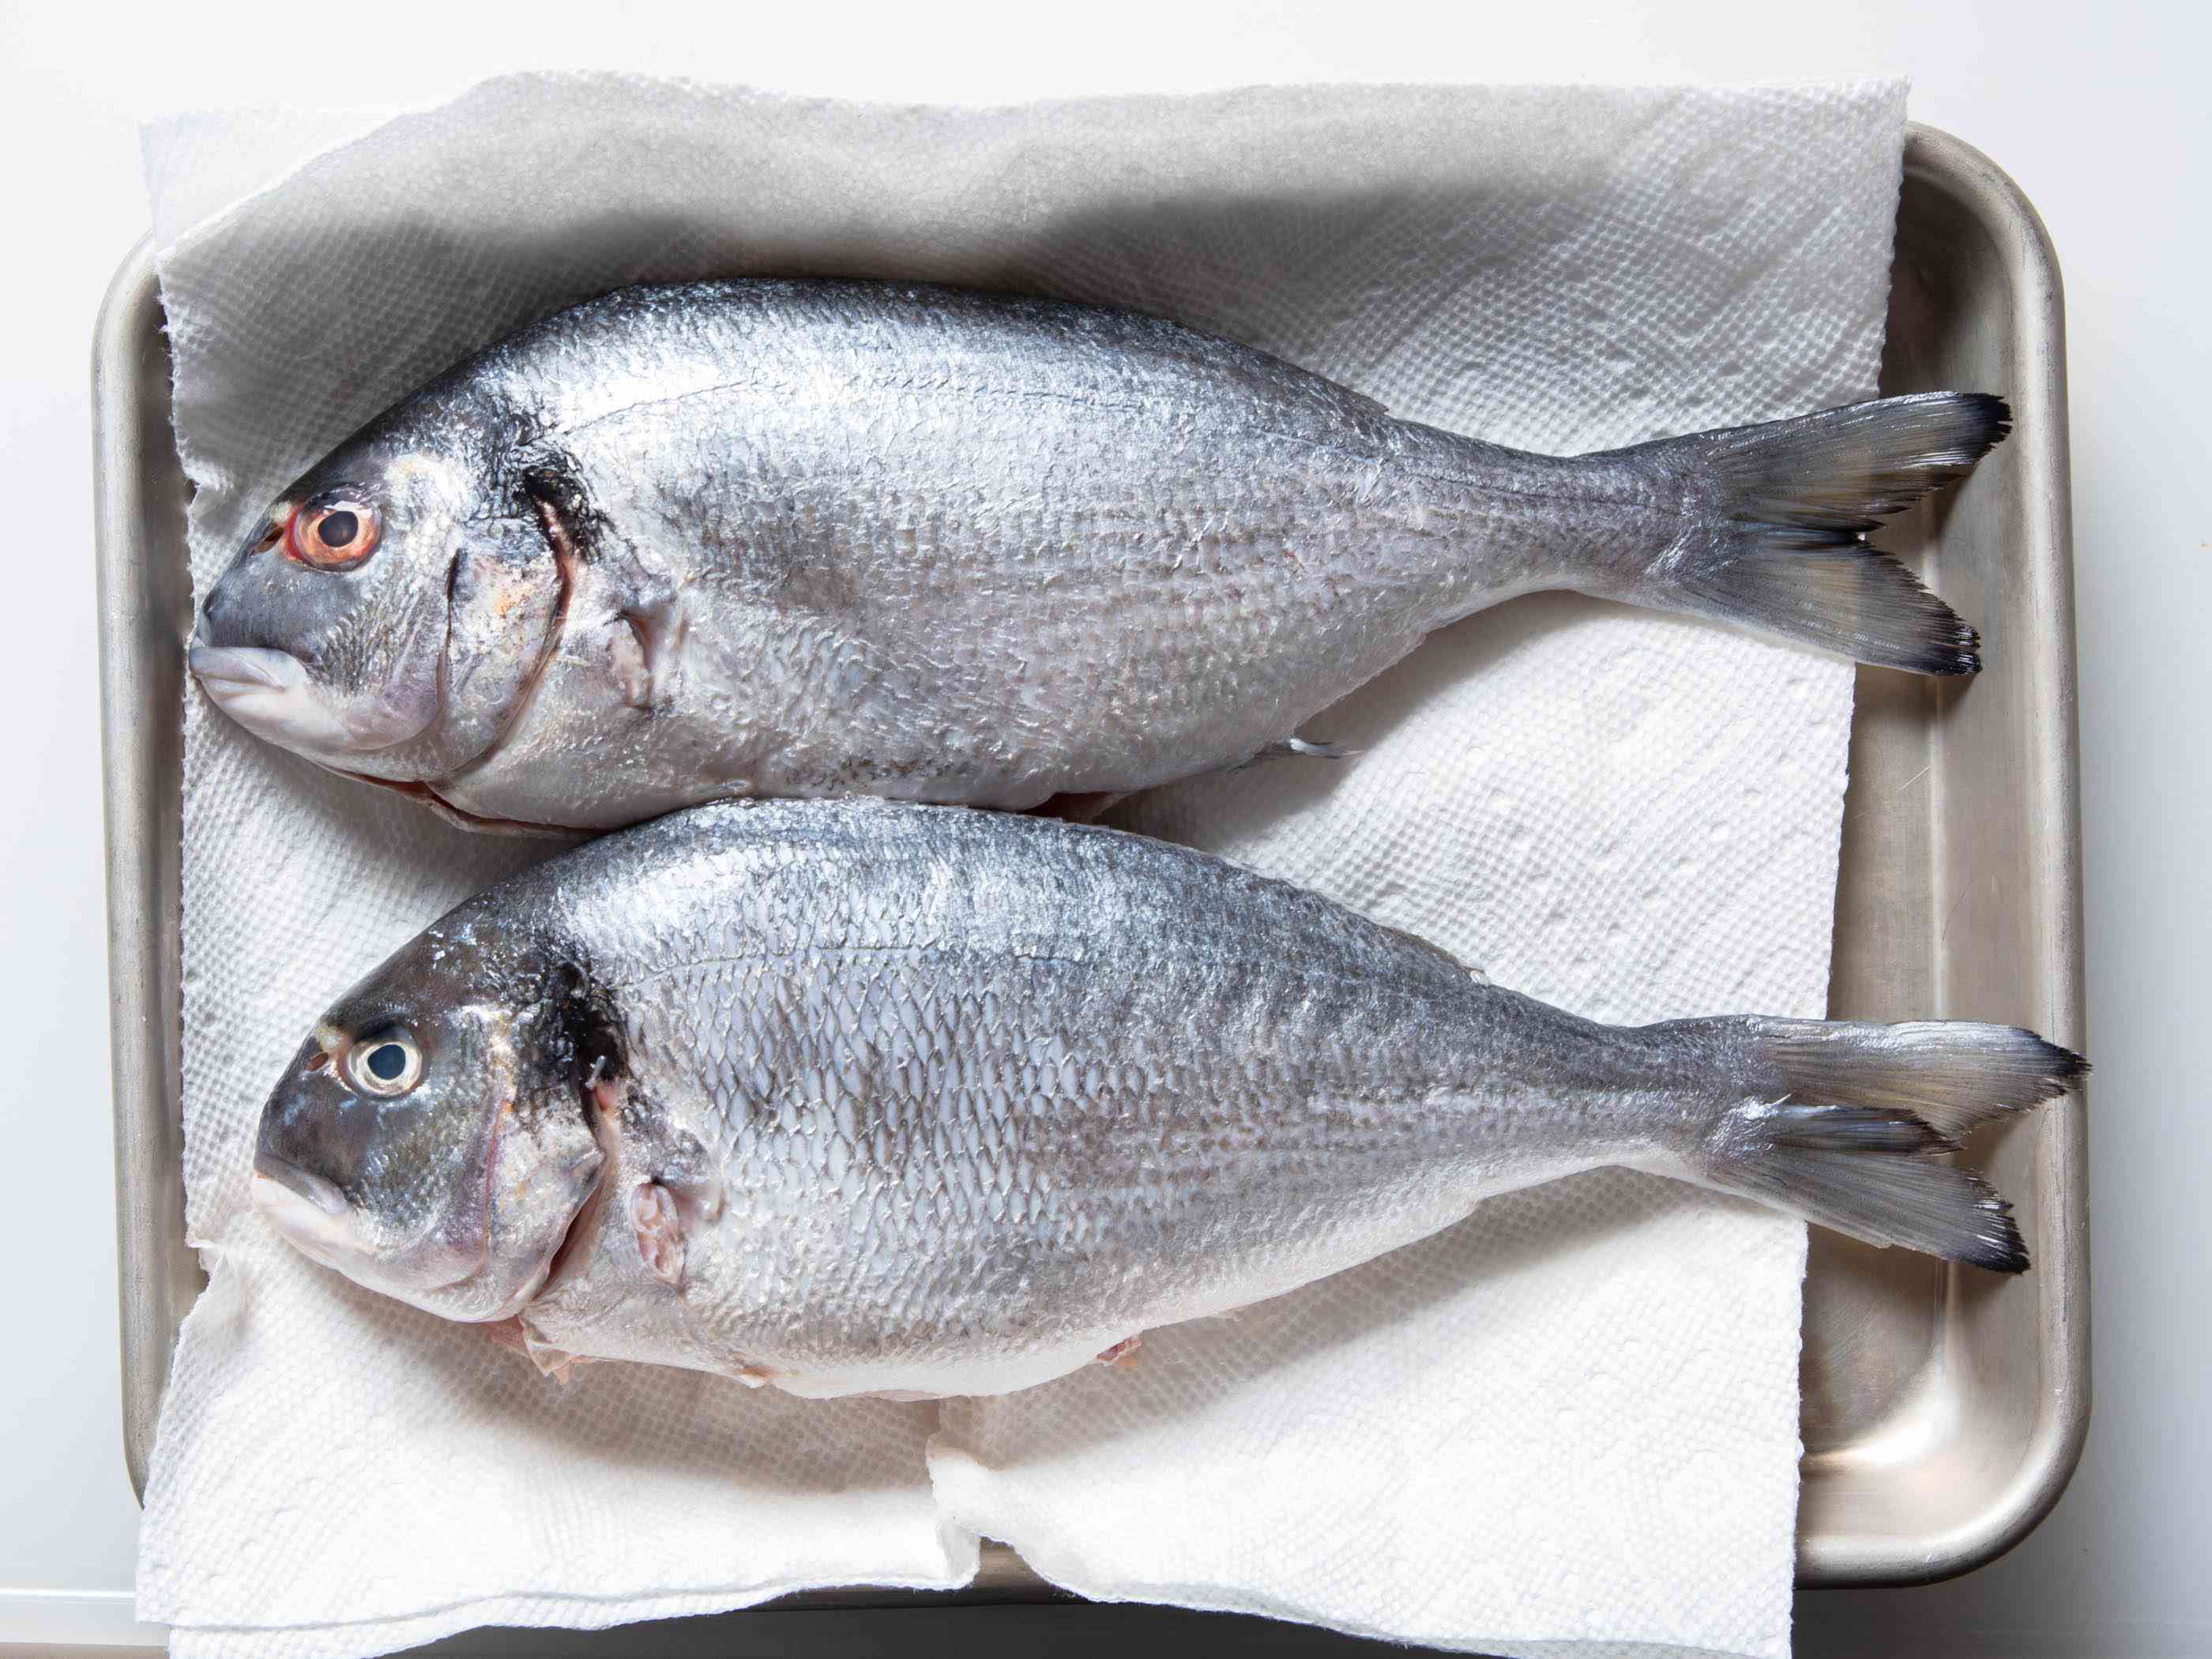 两条新鲜的整鱼放在托盘上的纸巾上。他们的皮肤闪闪发光，眼睛丰满，这是新鲜的两个视觉标志。